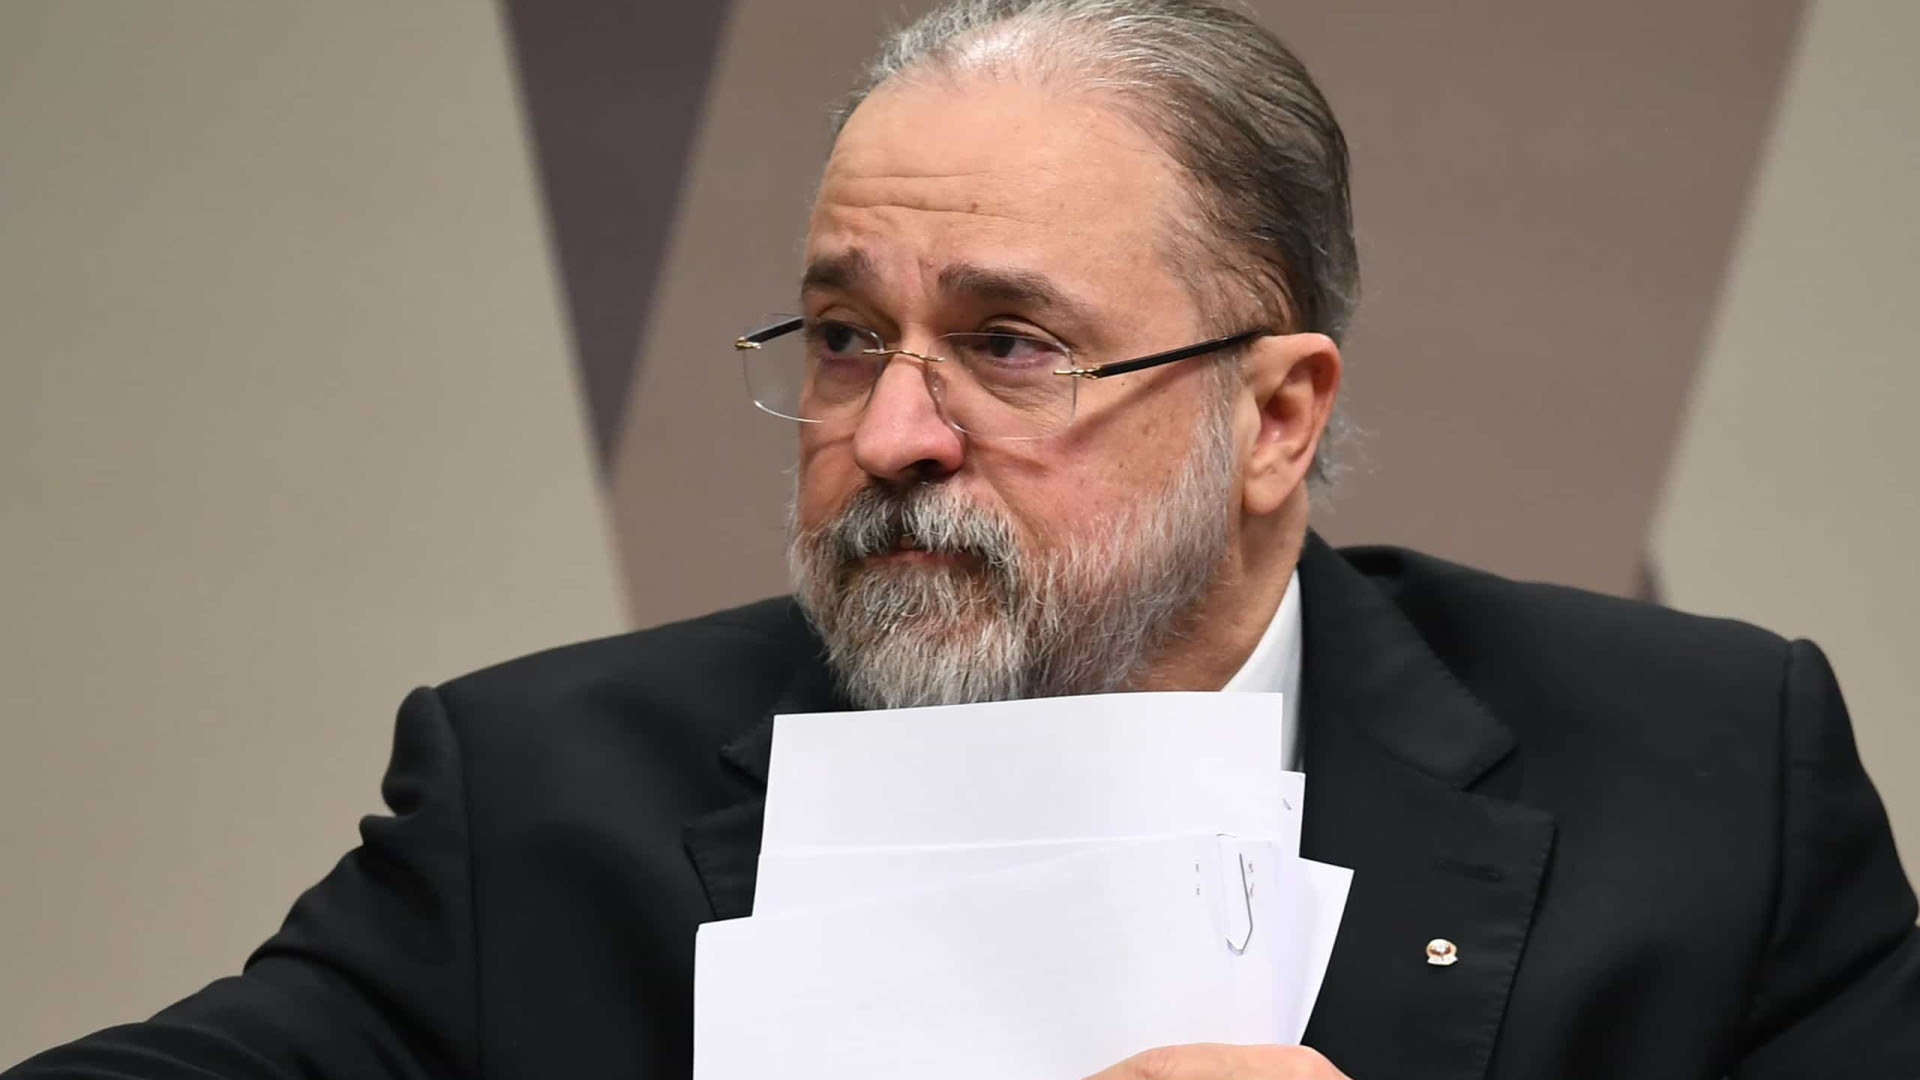  Aras pede para STF suspender MP das fake news editada por Bolsonaro